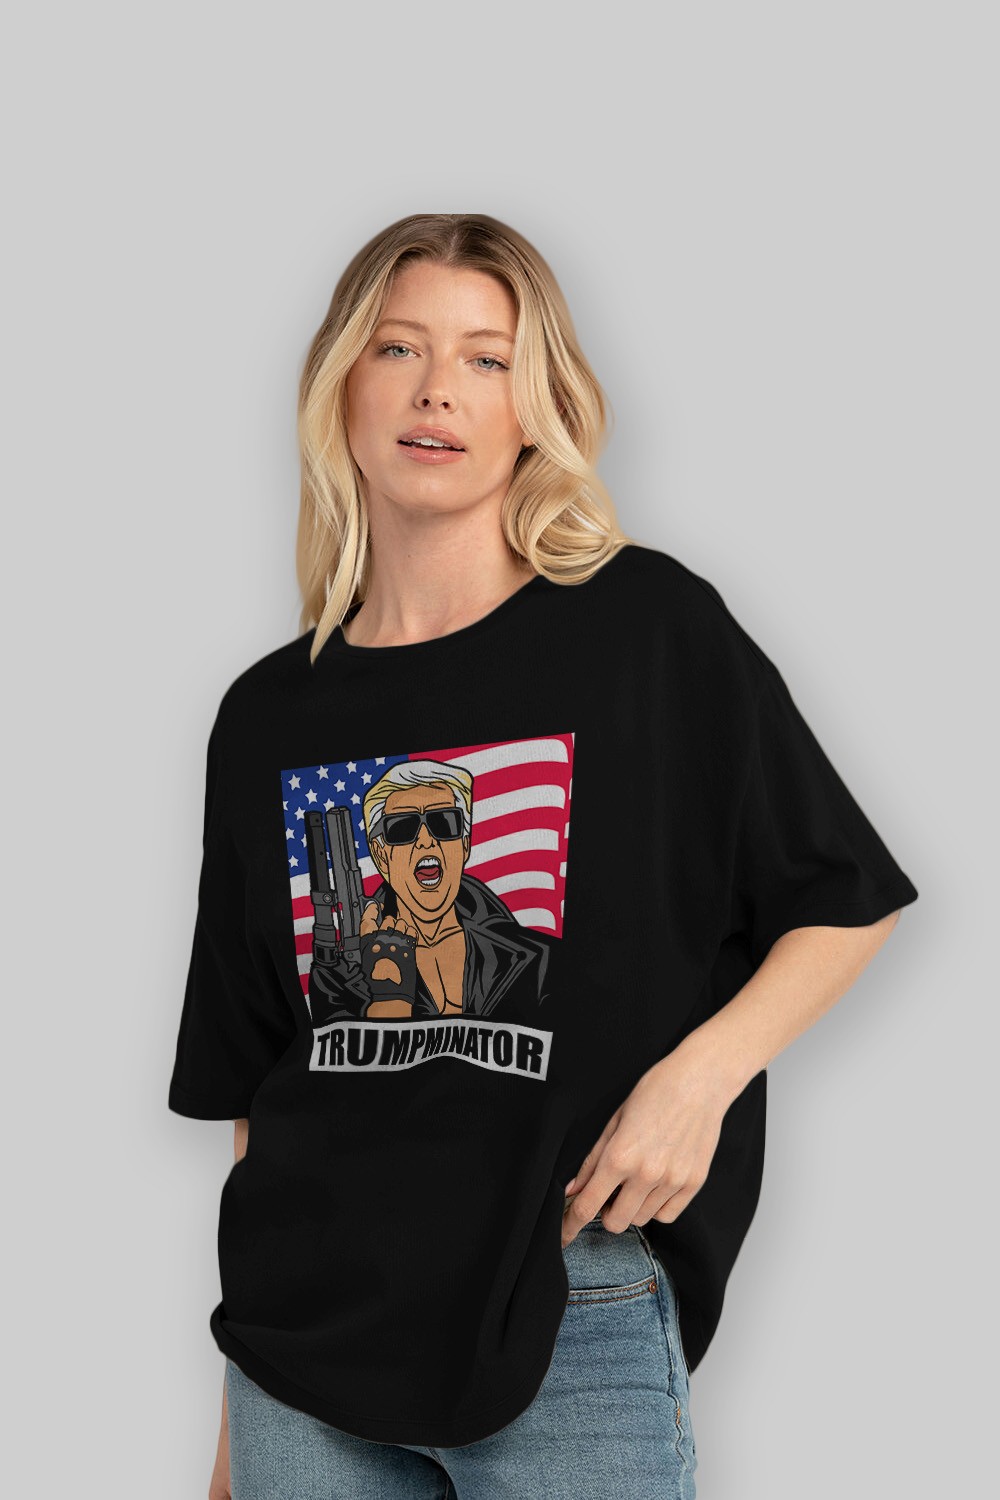 Trumpminator Ön Baskılı Oversize t-shirt Erkek Kadın Unisex %100 Pamuk tişort